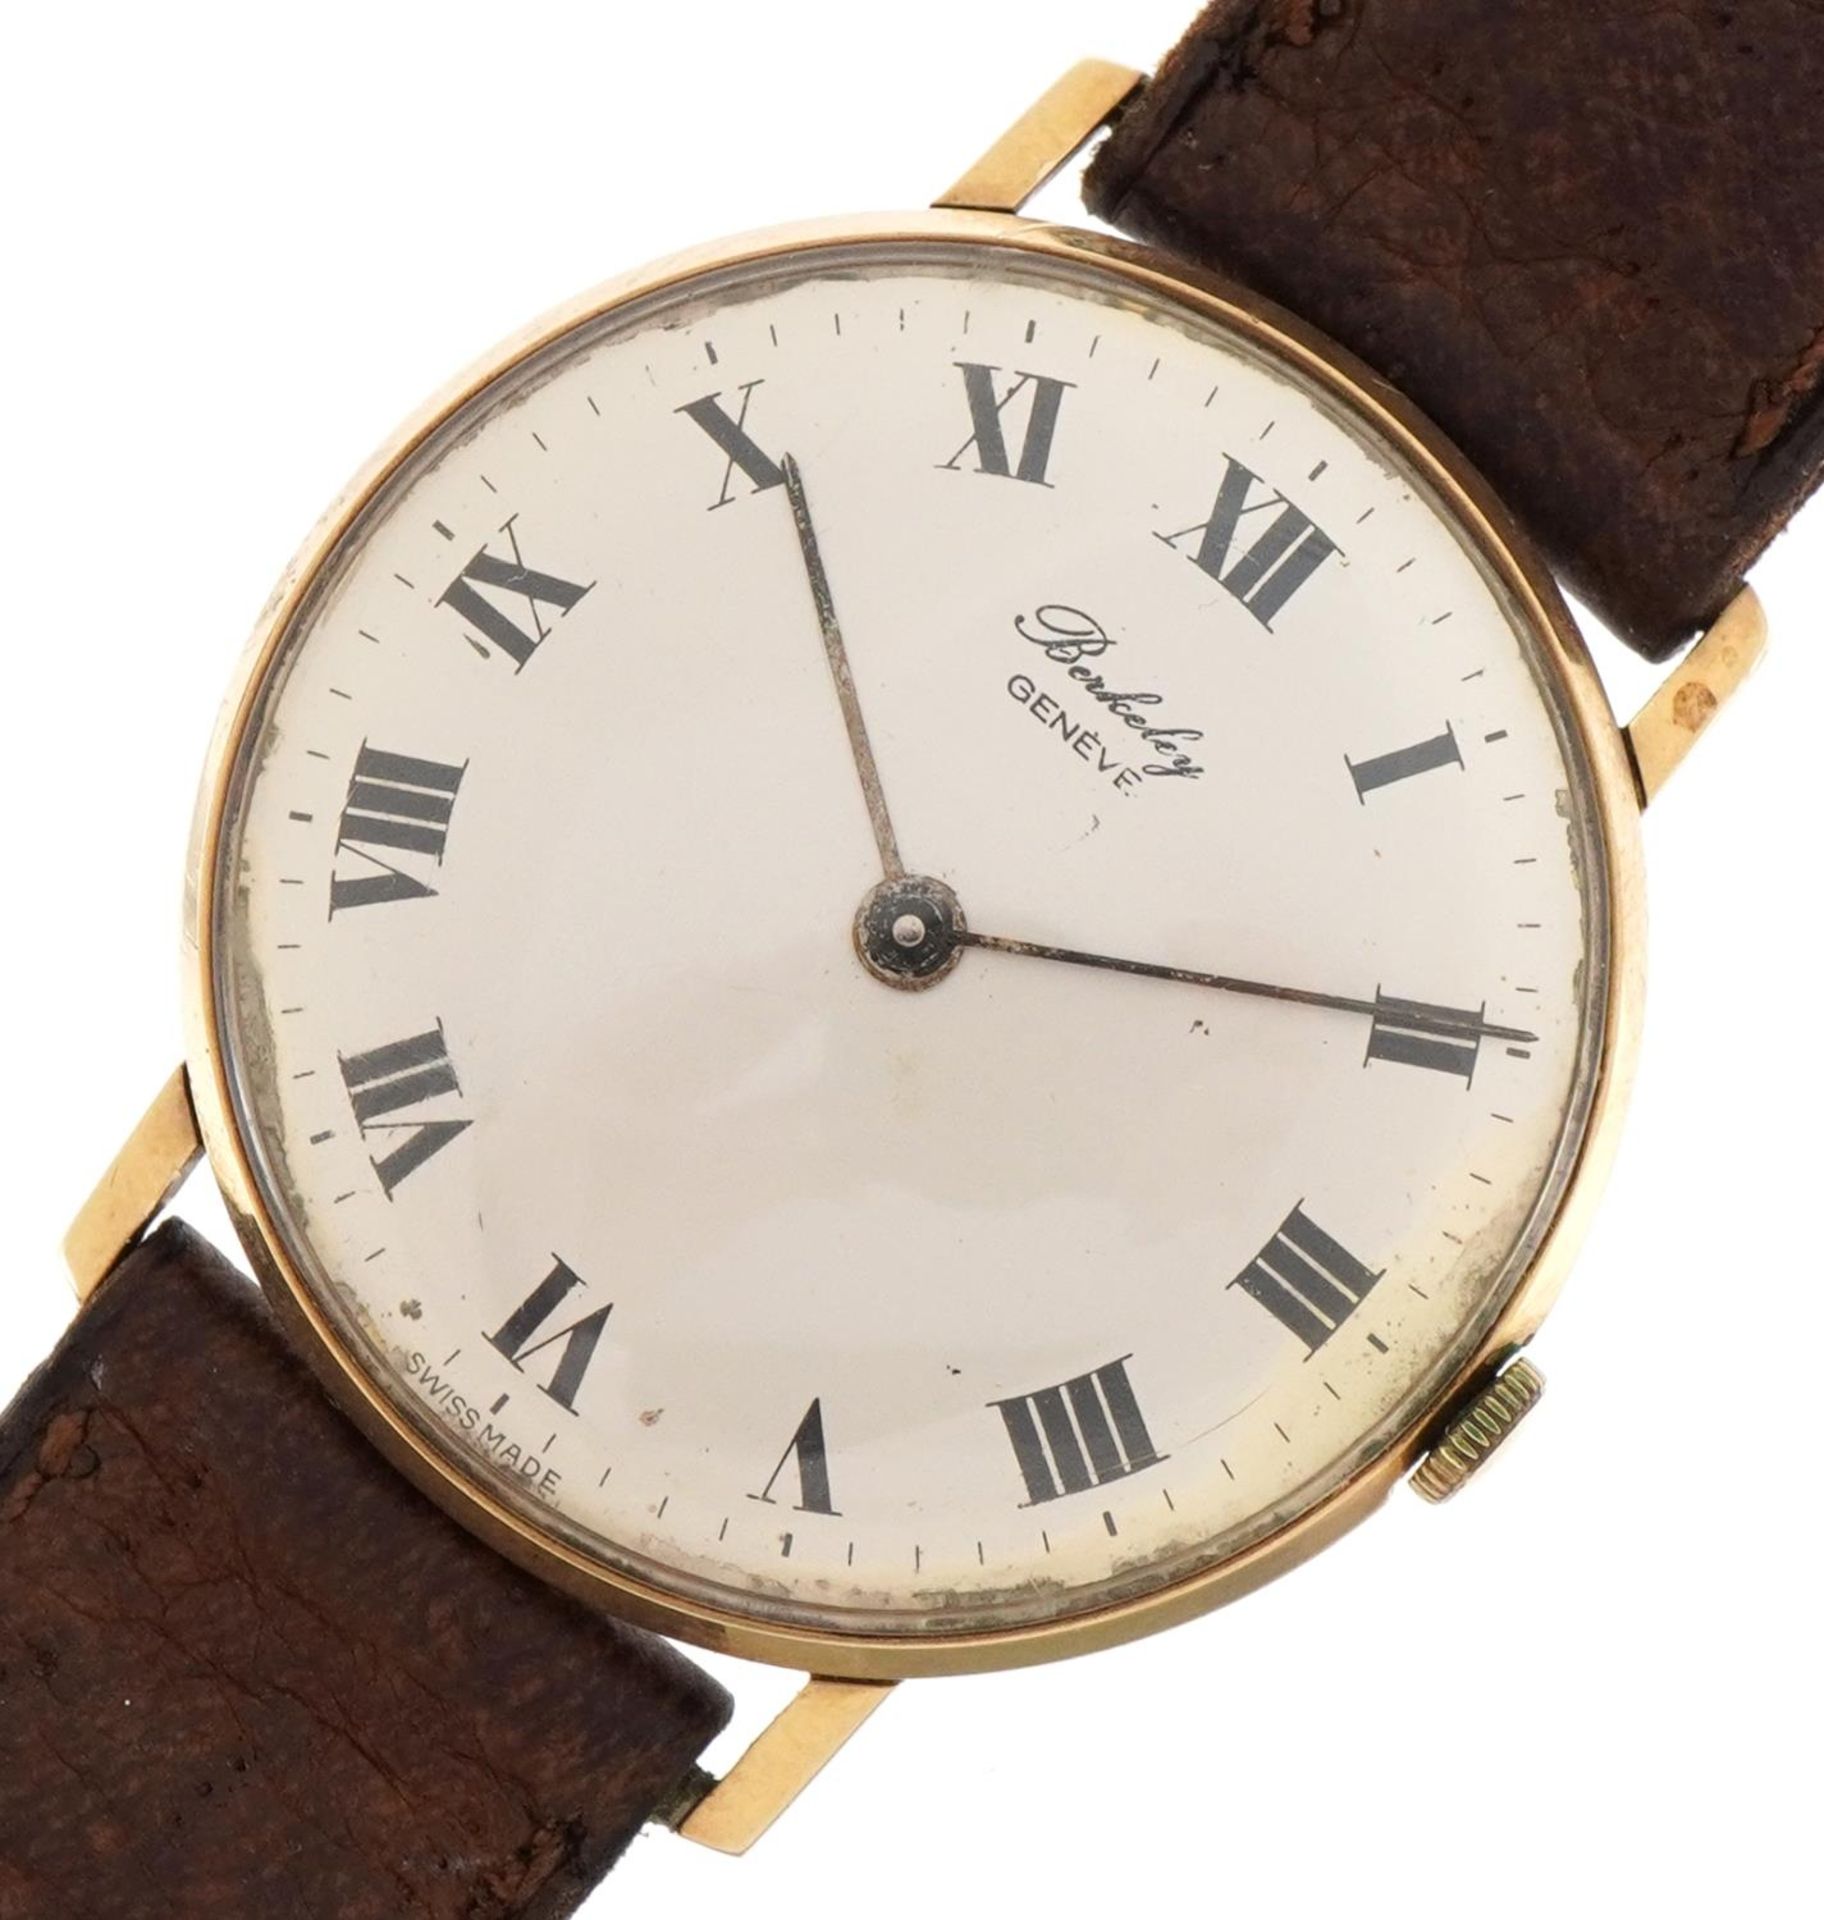 Berkeley Geneve, gentlemen's 9ct gold wristwatch numbered 16886695, the case 32mm in diameter, total